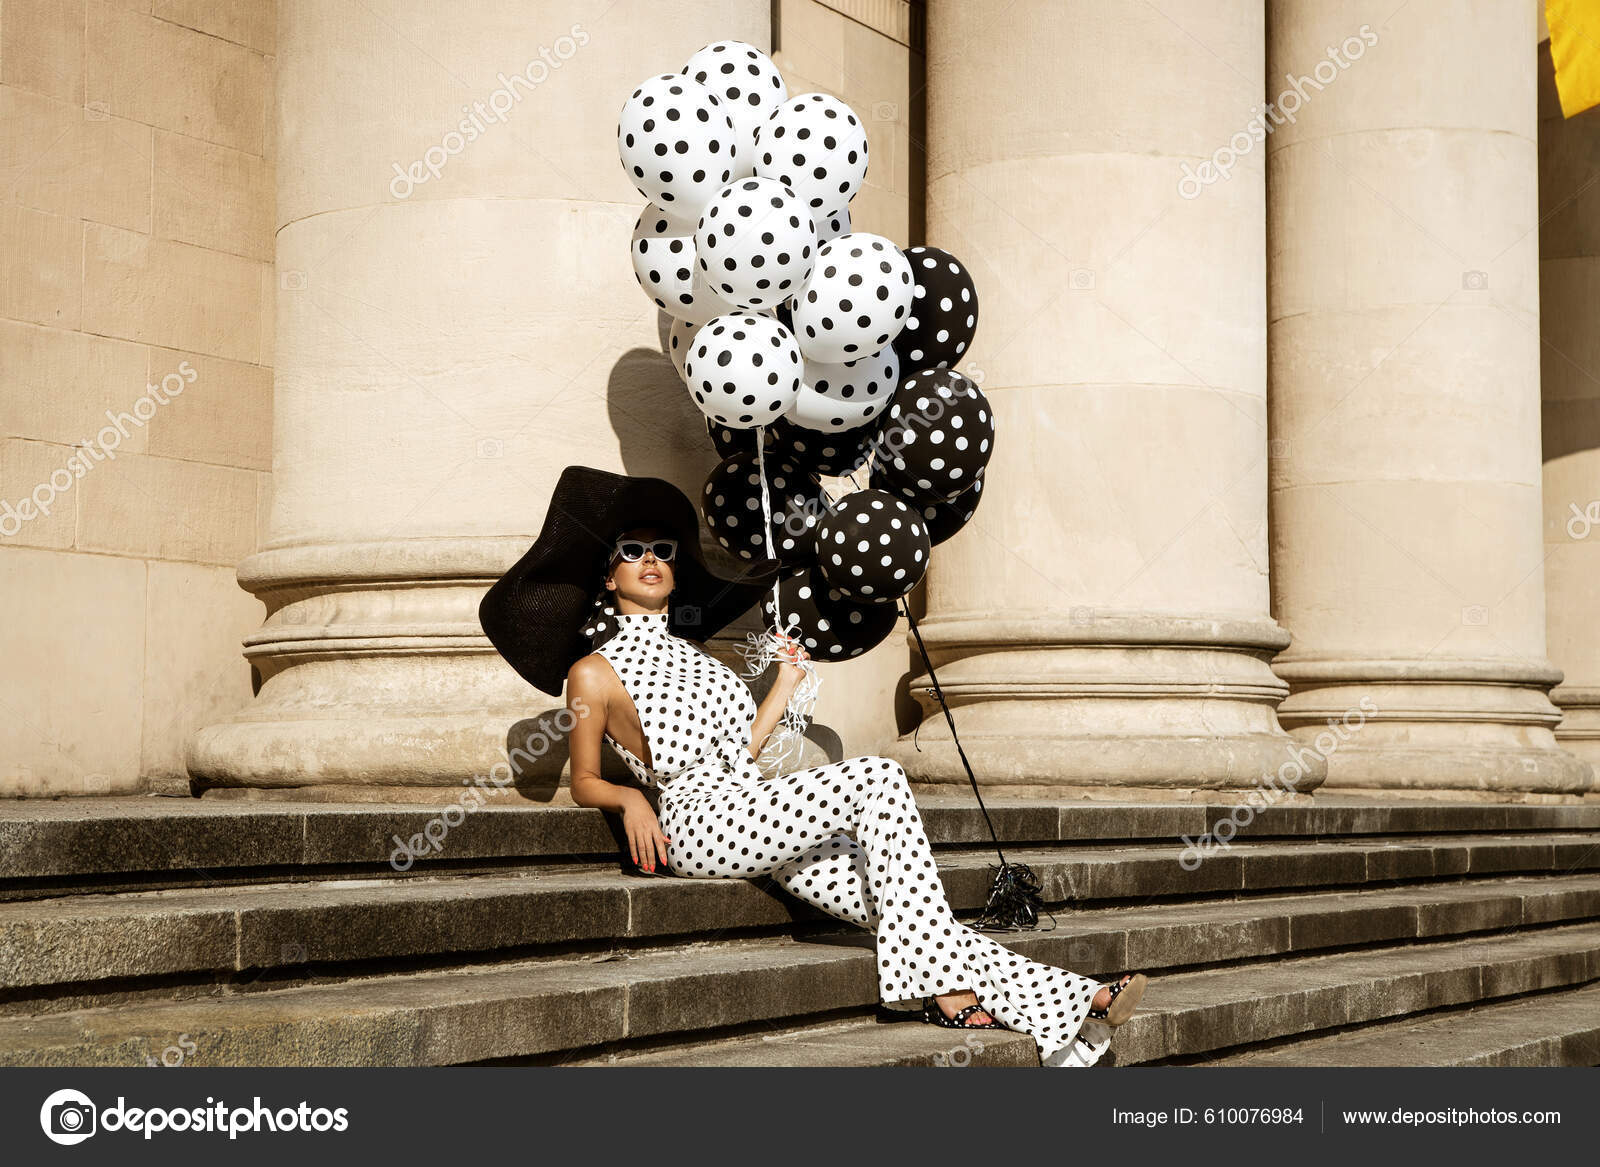 Spring, summer fashion. Glamour, stylish elegant woman in polka